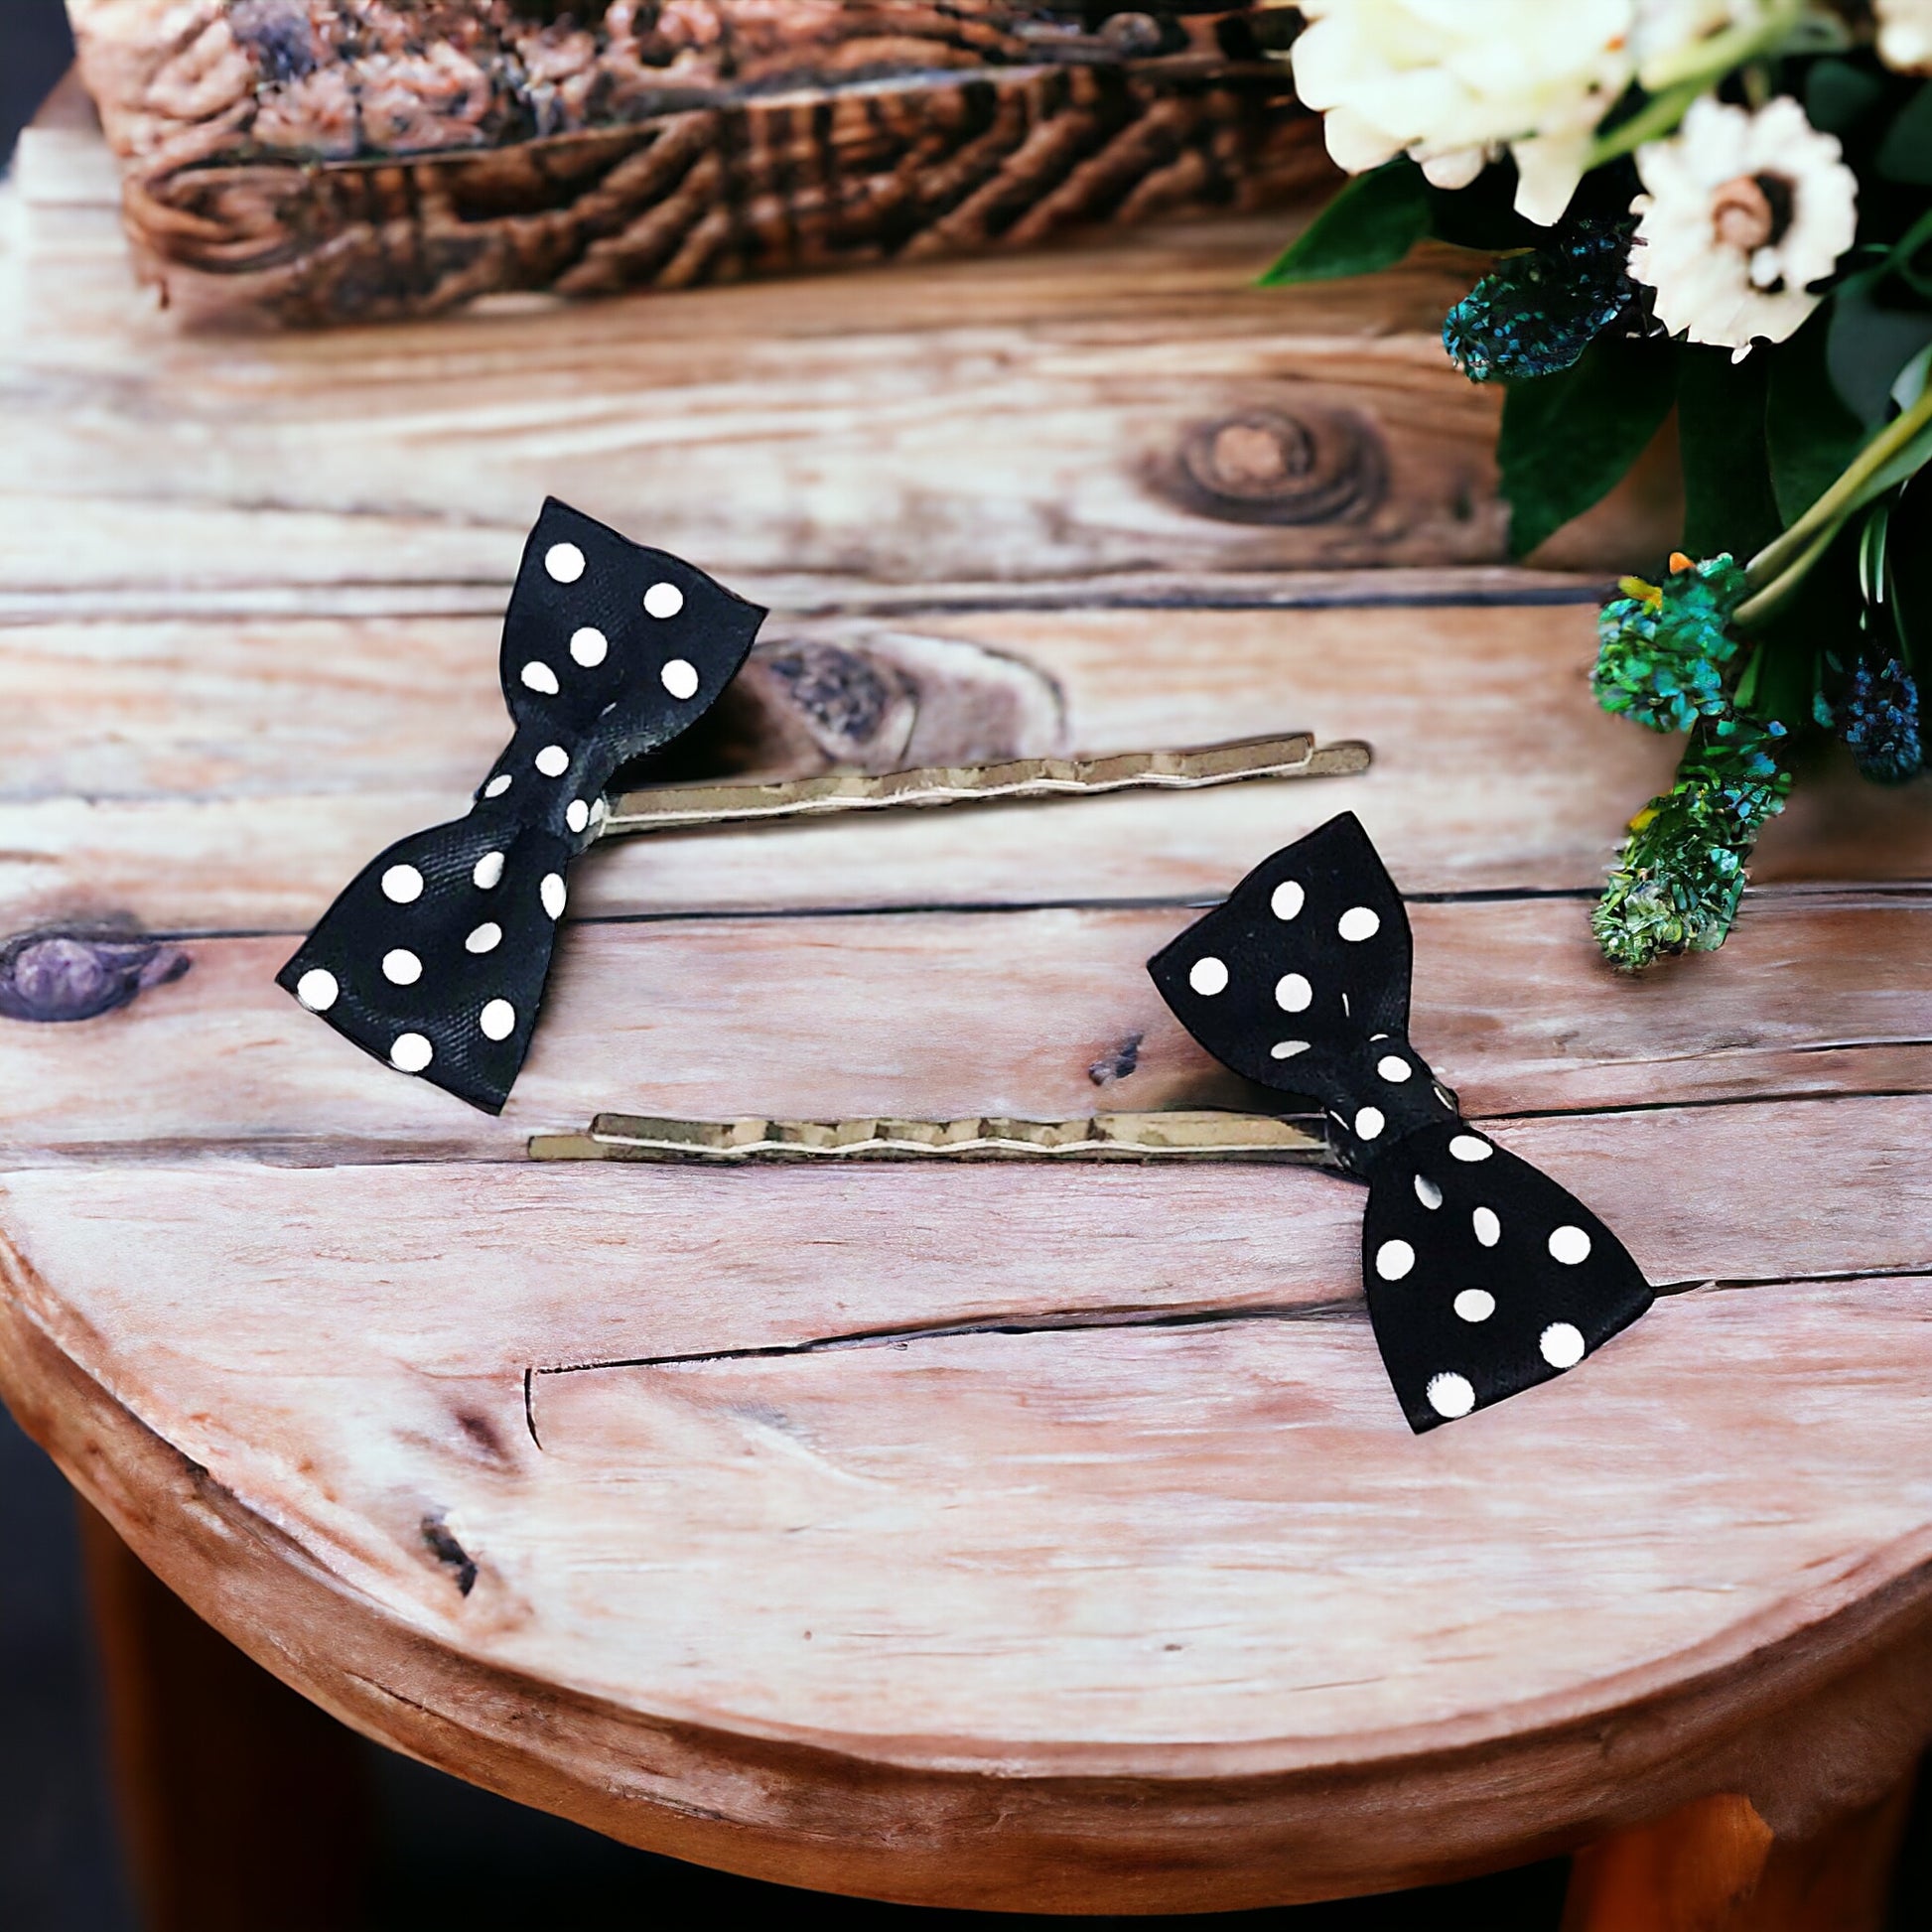 Black & White Polka Dot Bow Hair Pins - Chic & Playful Hair Accessories